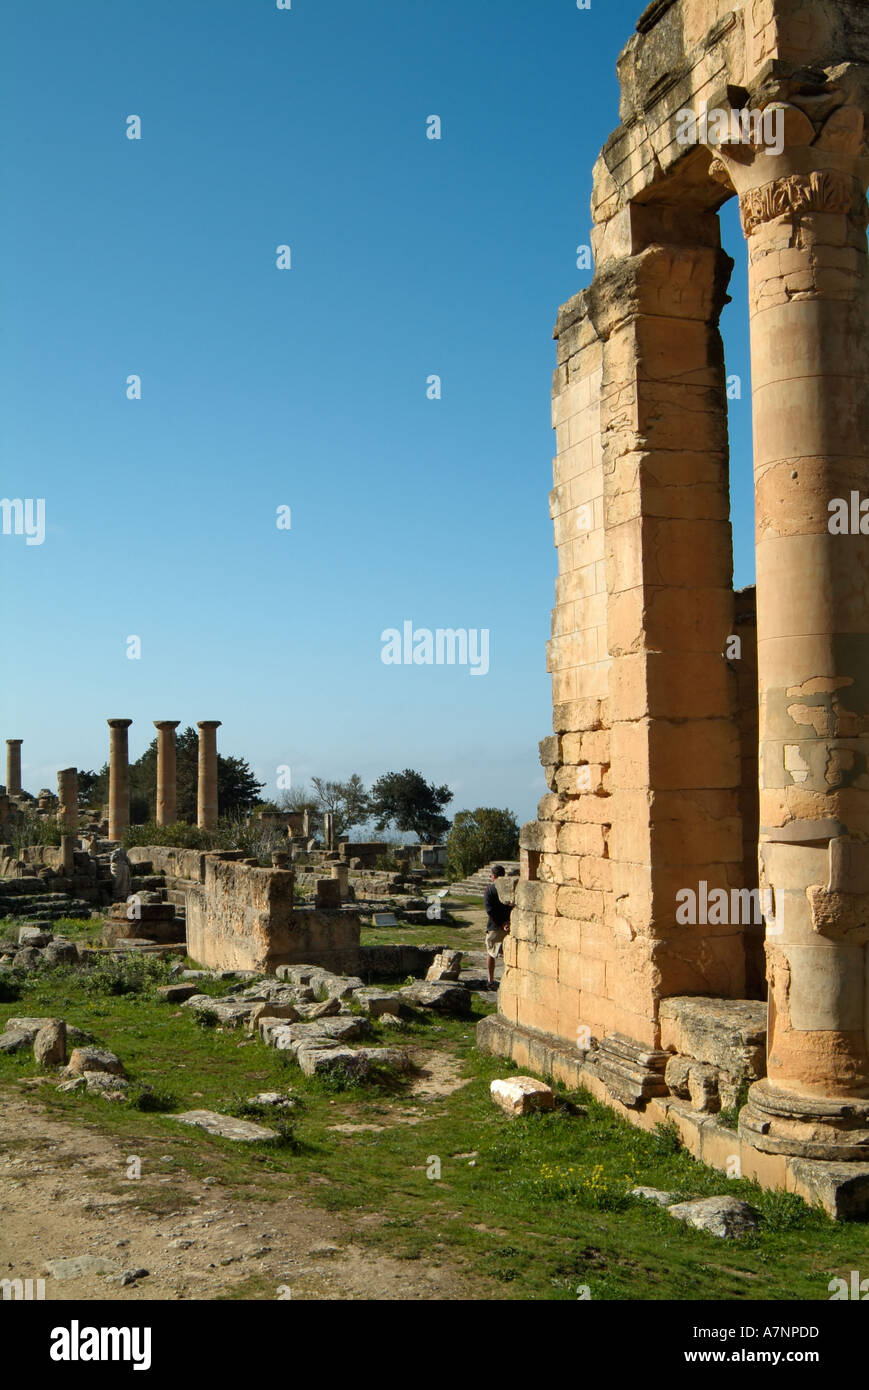 Sanctuaire d'Apollon, Cyrène grec / Roman ruins, Libye Banque D'Images